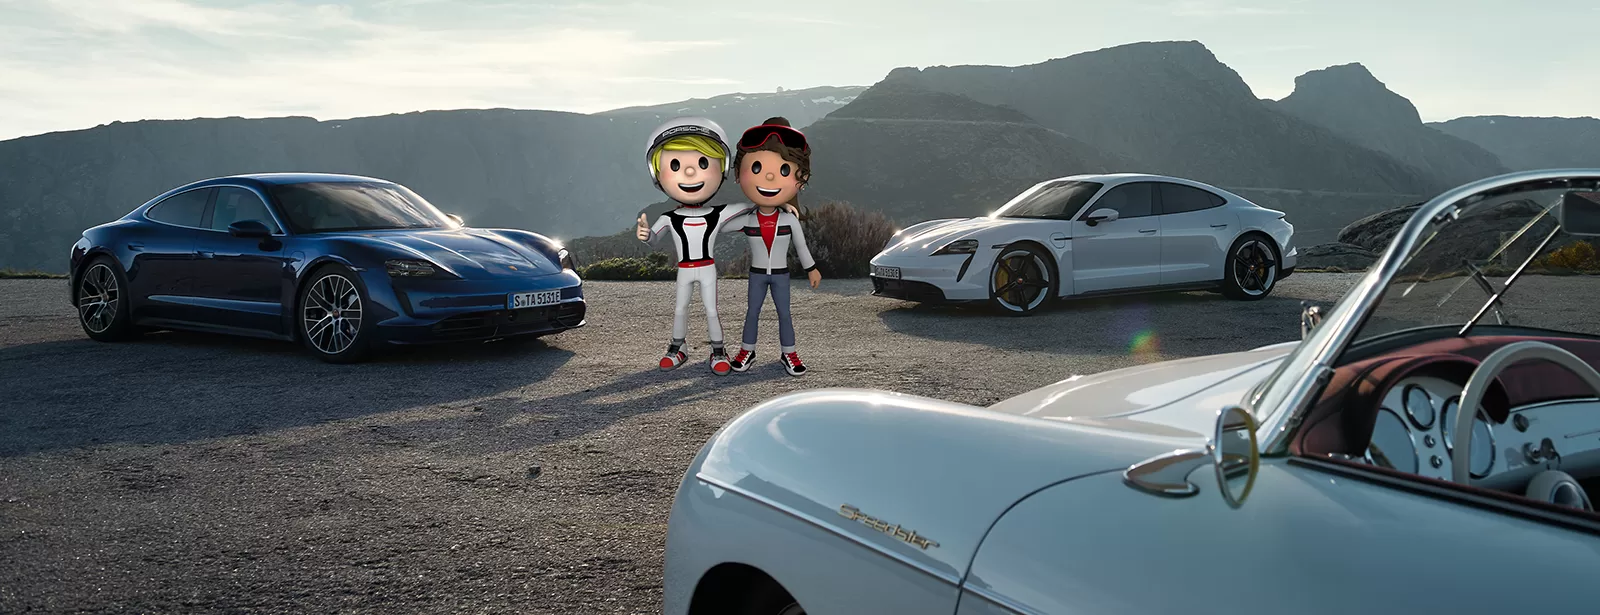 Porsche 4Kids: приятное разнообразие. Онлайн игры и увлекательные занятия для детей